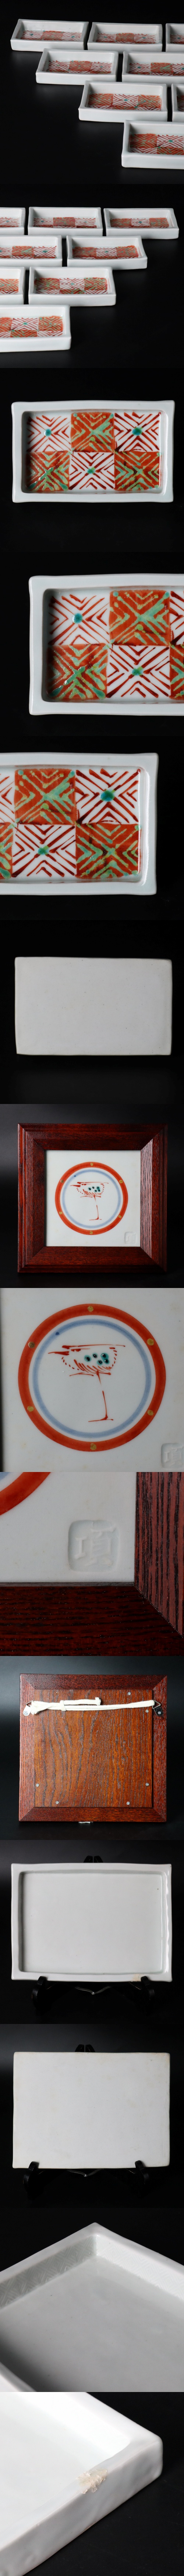 在庫通販李朝時代「虎図」肉筆紙本 掛軸 朝鮮古画 唐物骨董 3F23.10C 花鳥、鳥獣